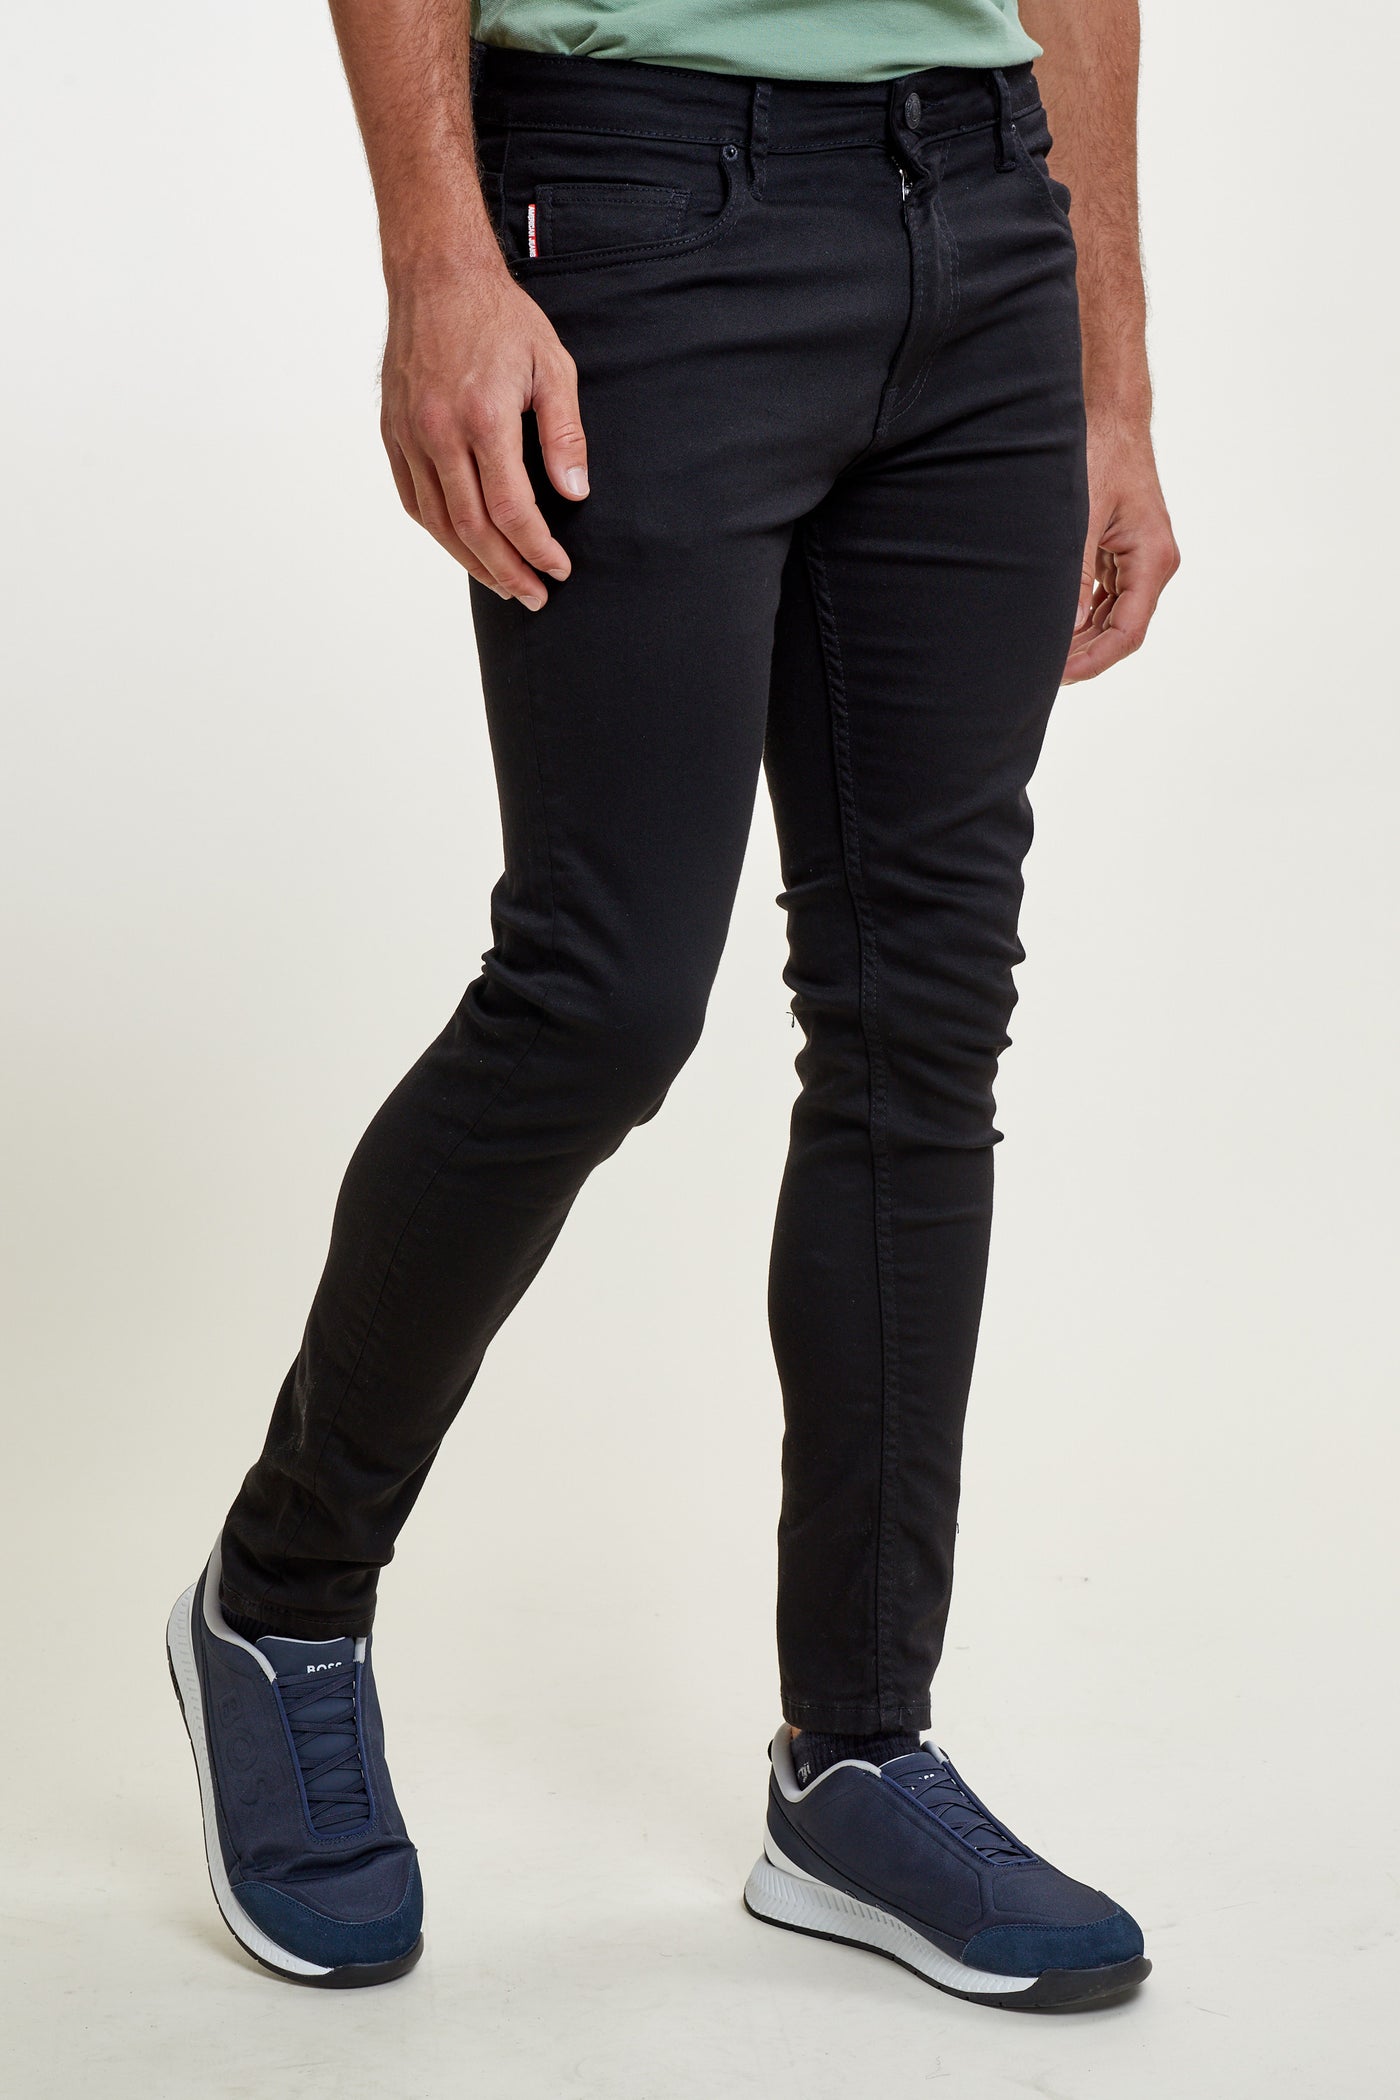 מכנס ג'ינס סלים בצבע שחור